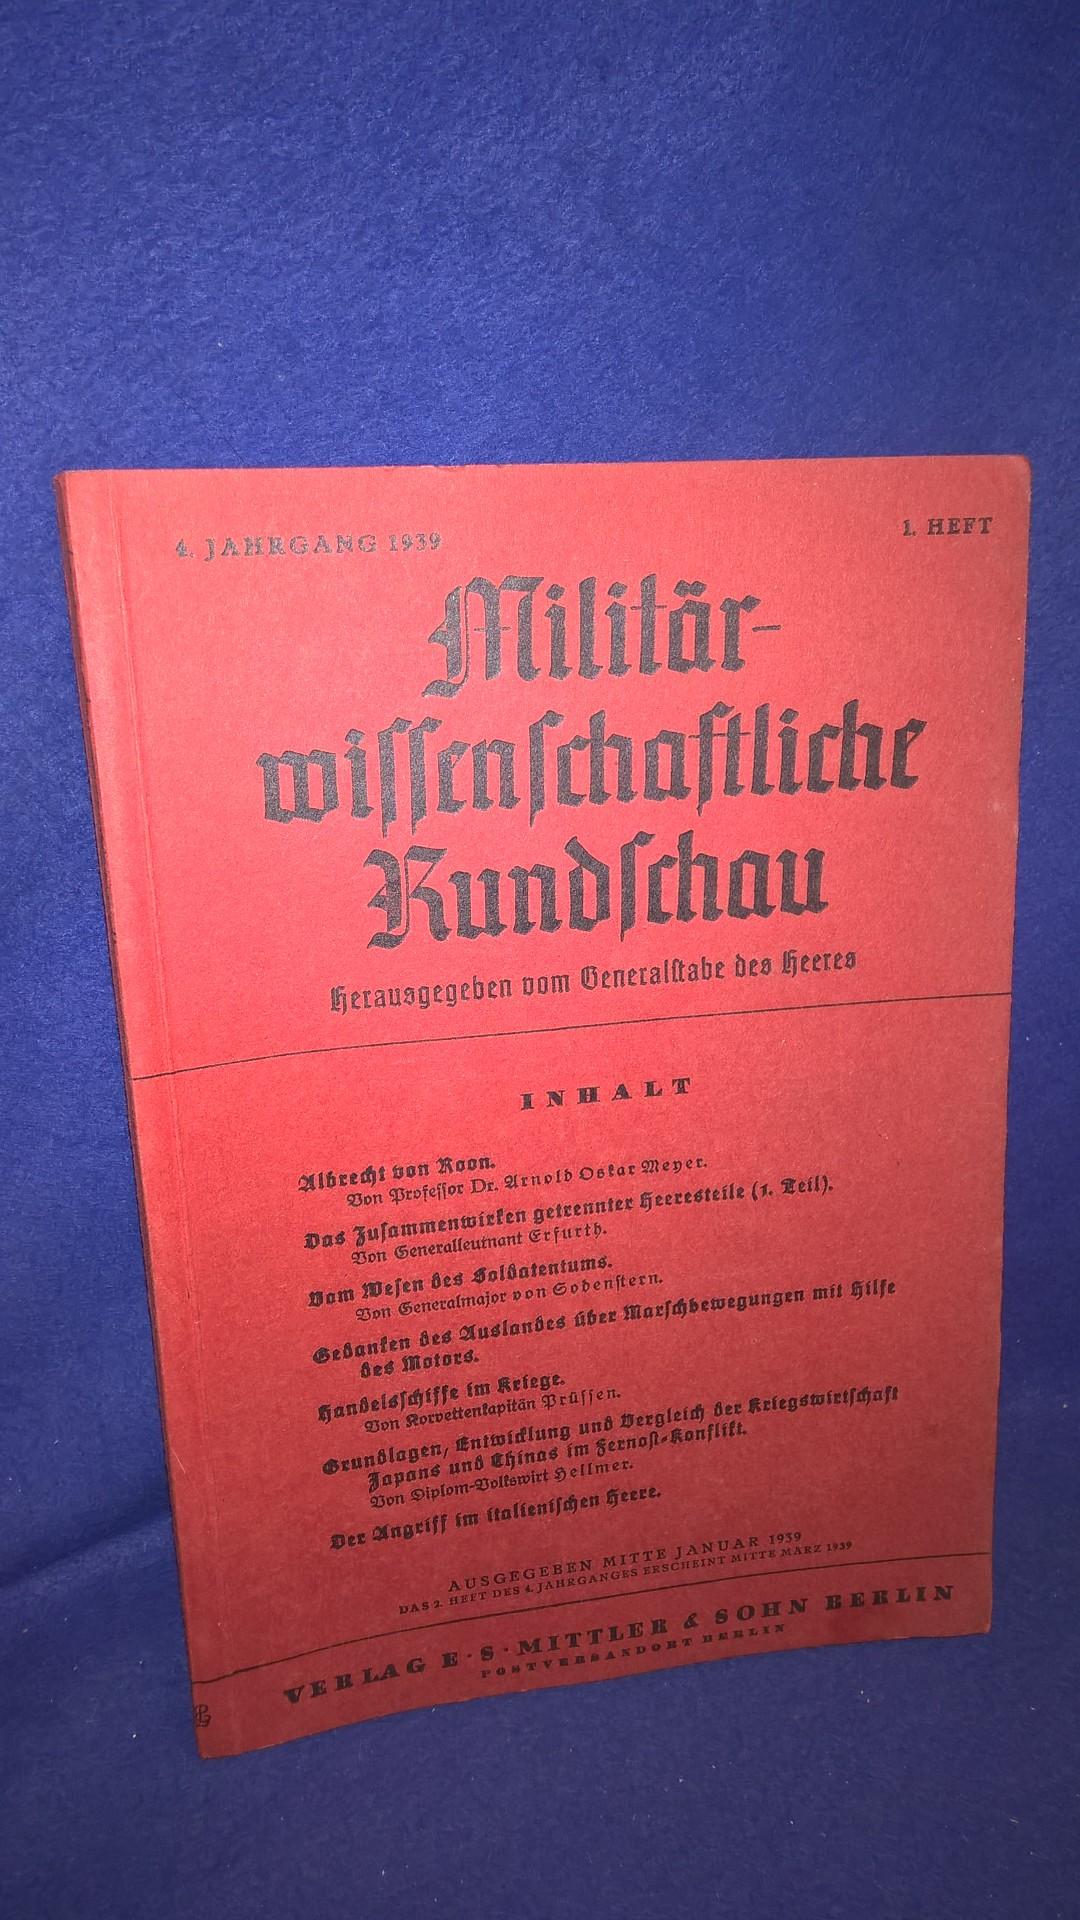 Militärwissenschaftliche Rundschau 4. Jahrgang 1939 1. Heft. Aus dem Inhalt: v. Roon/ Handelsschiffe im Kriege/ Getrennter Heeresteile sowie weitere Aufsätze.